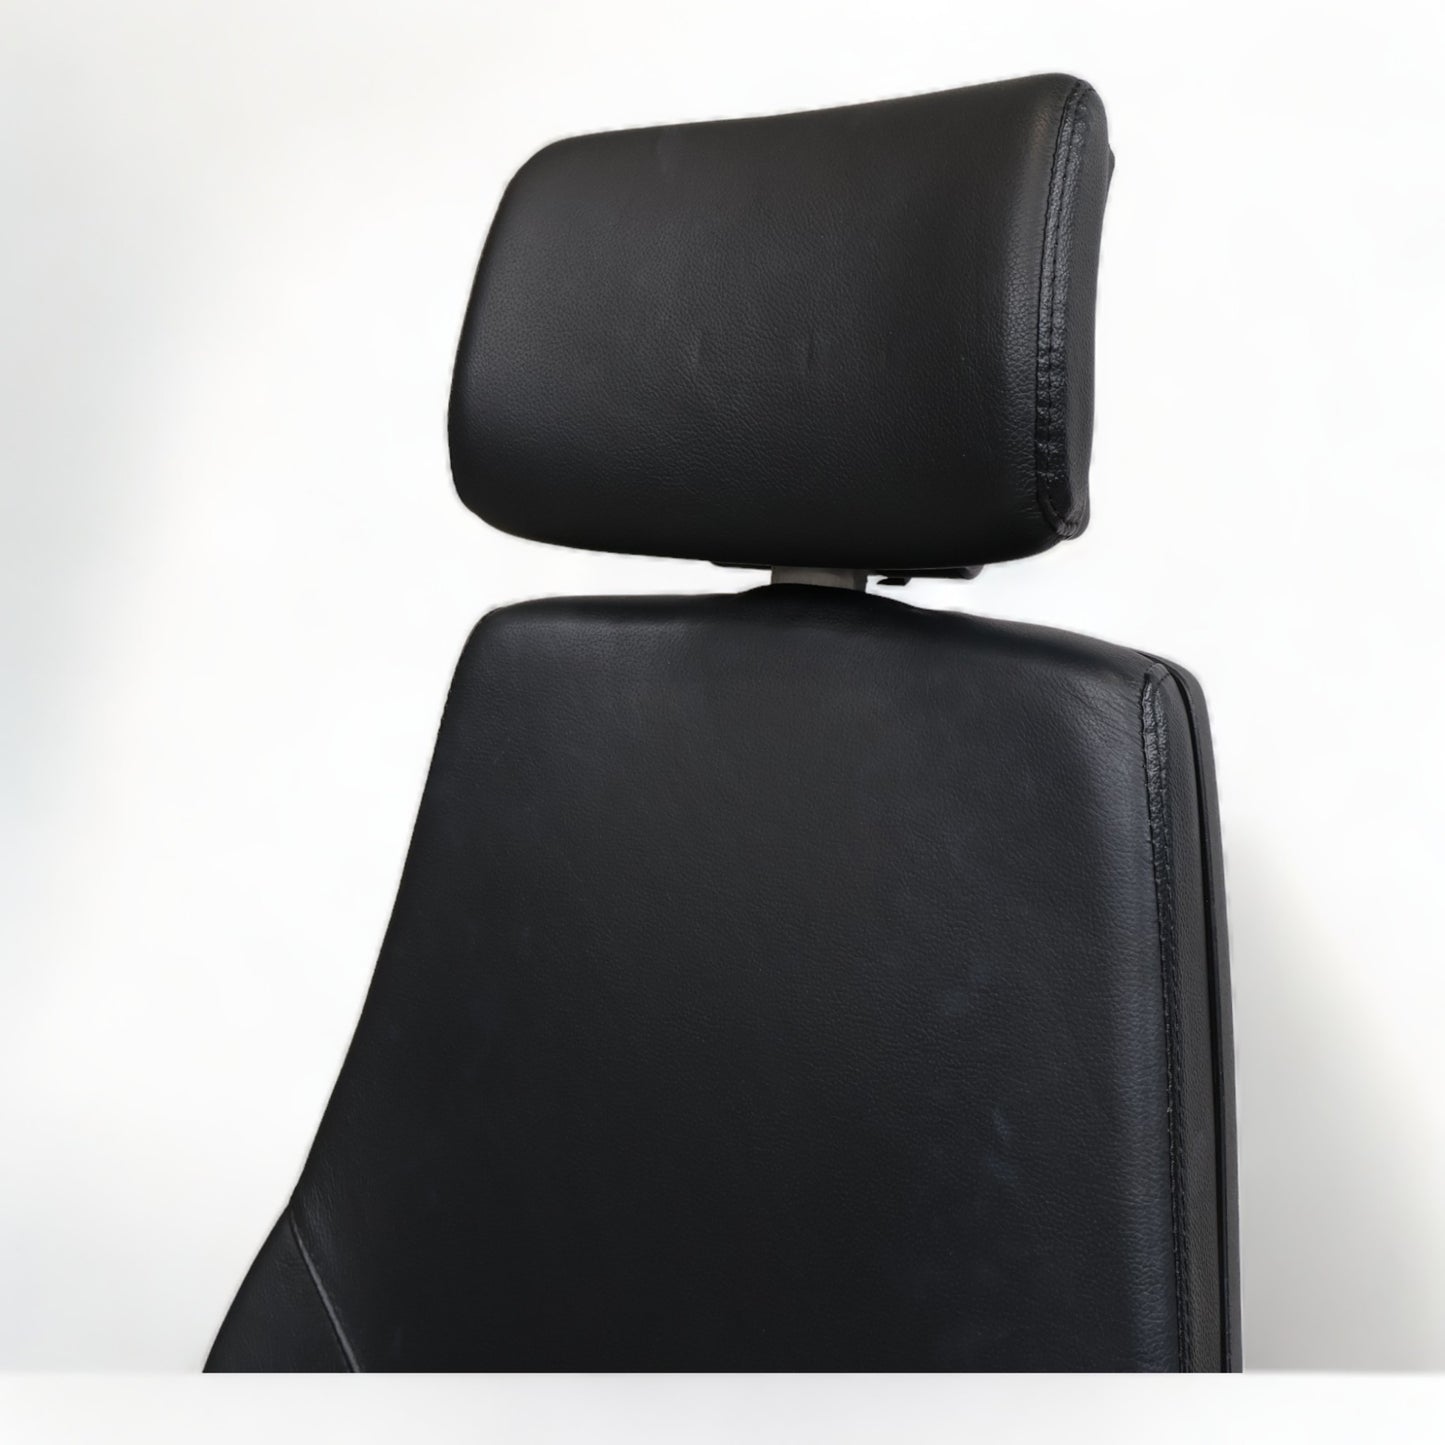 Nyrenset | Sort kontorstol i skinn med høy rygg og nakkestøtte